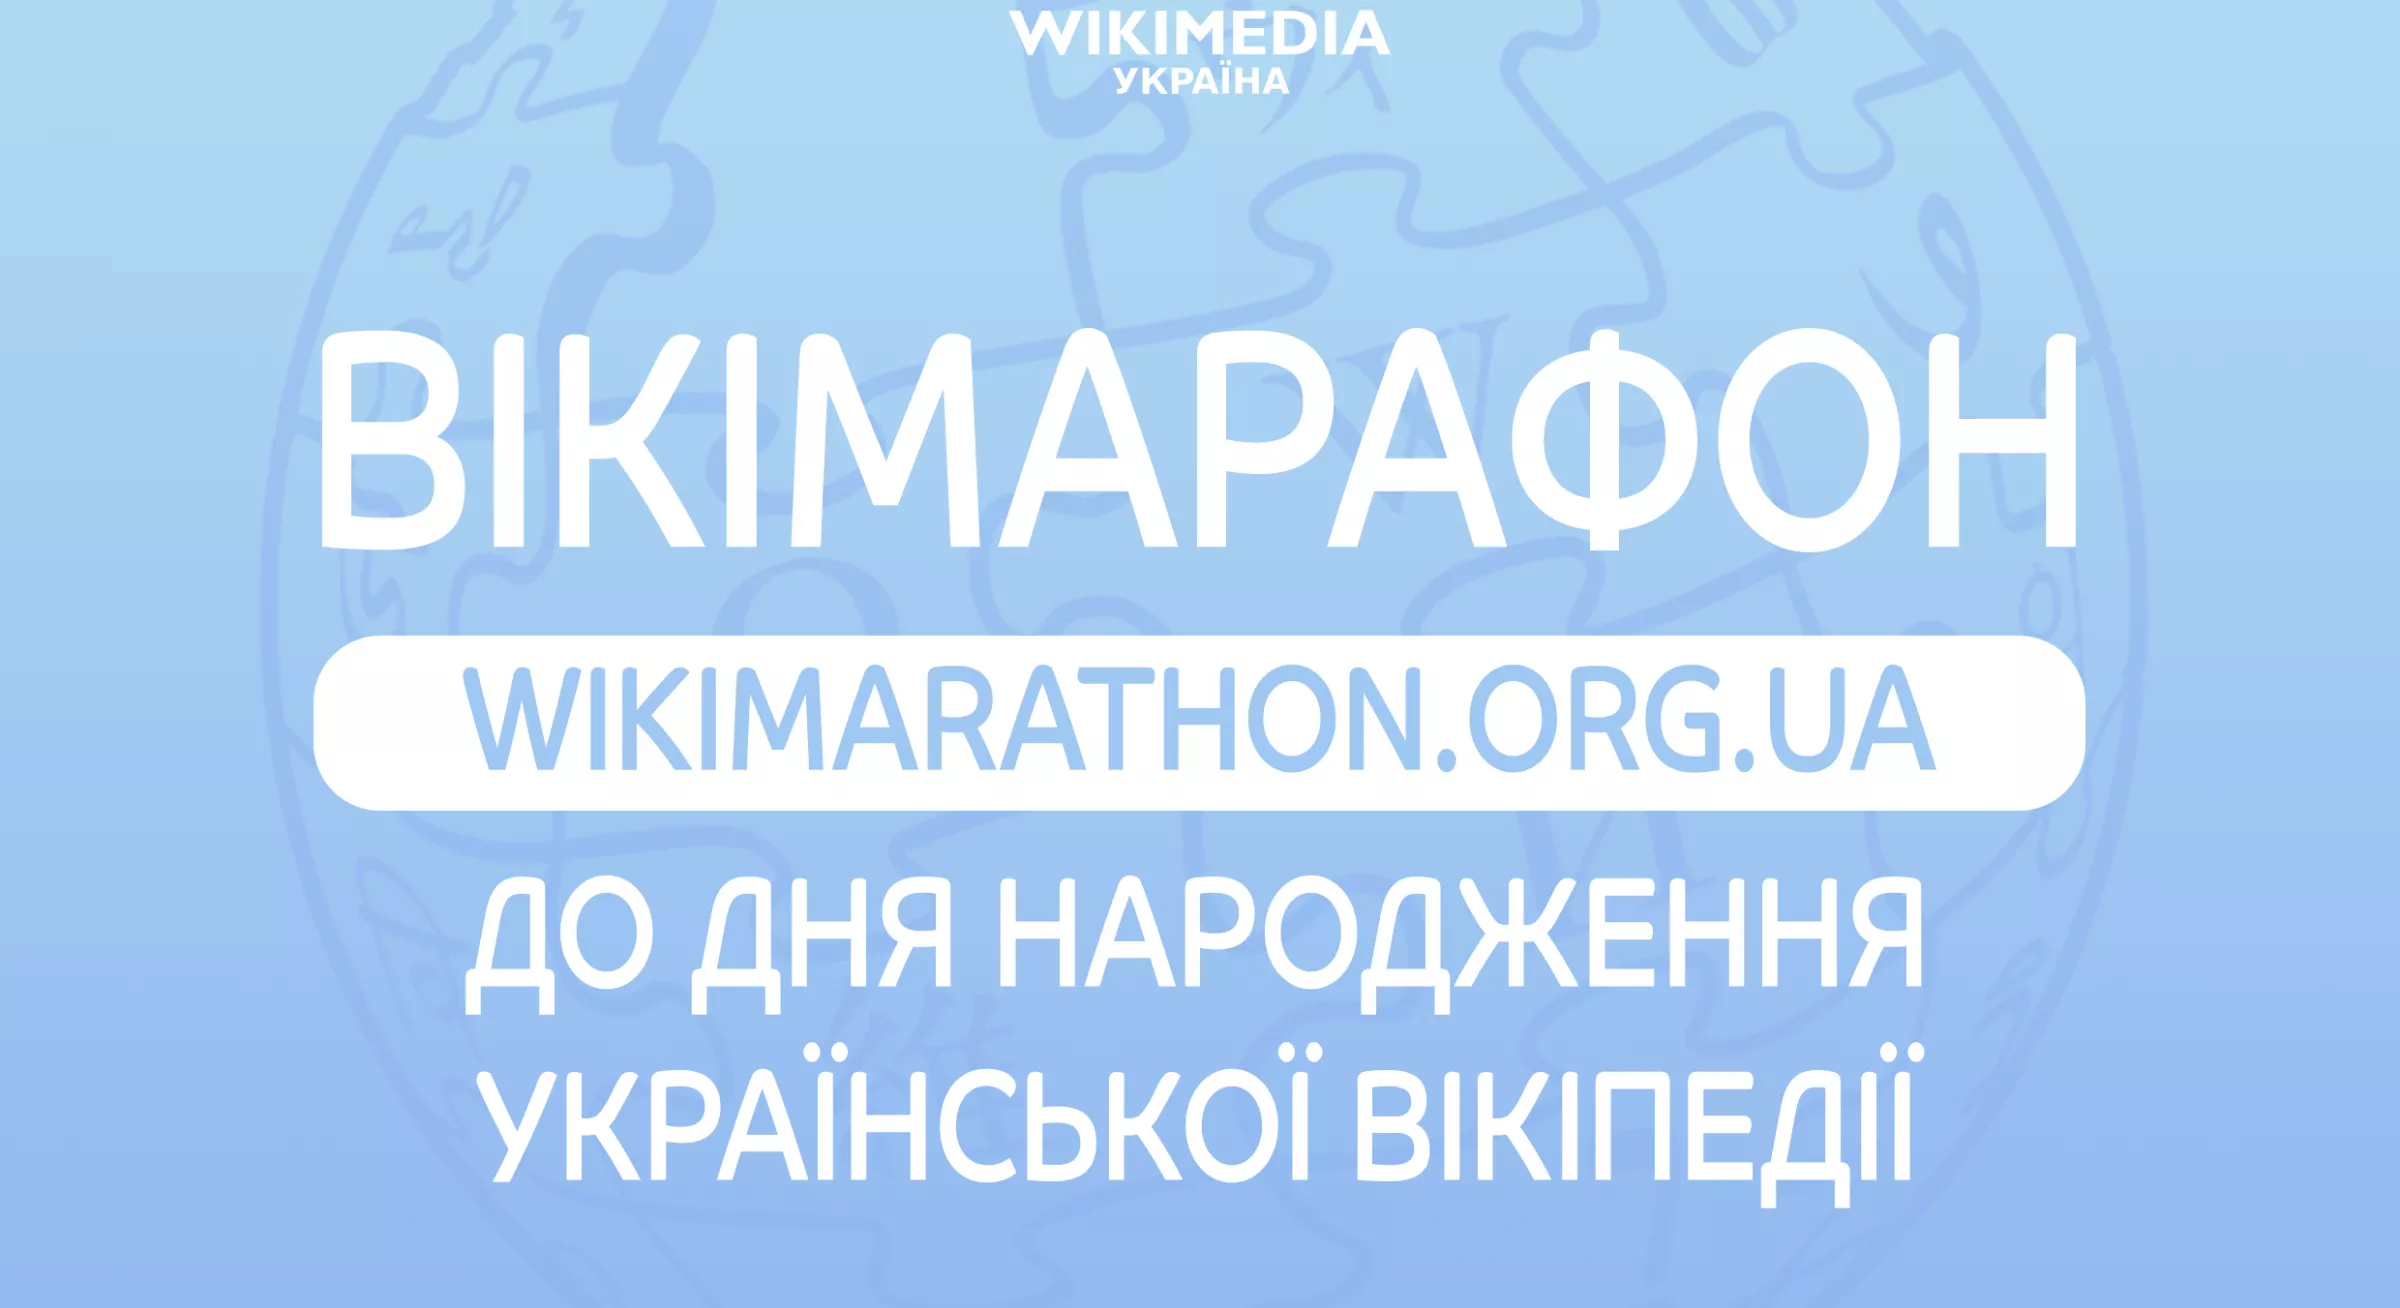 Українська «Вікіпедія» запускає марафон статей до свого 18-річчя